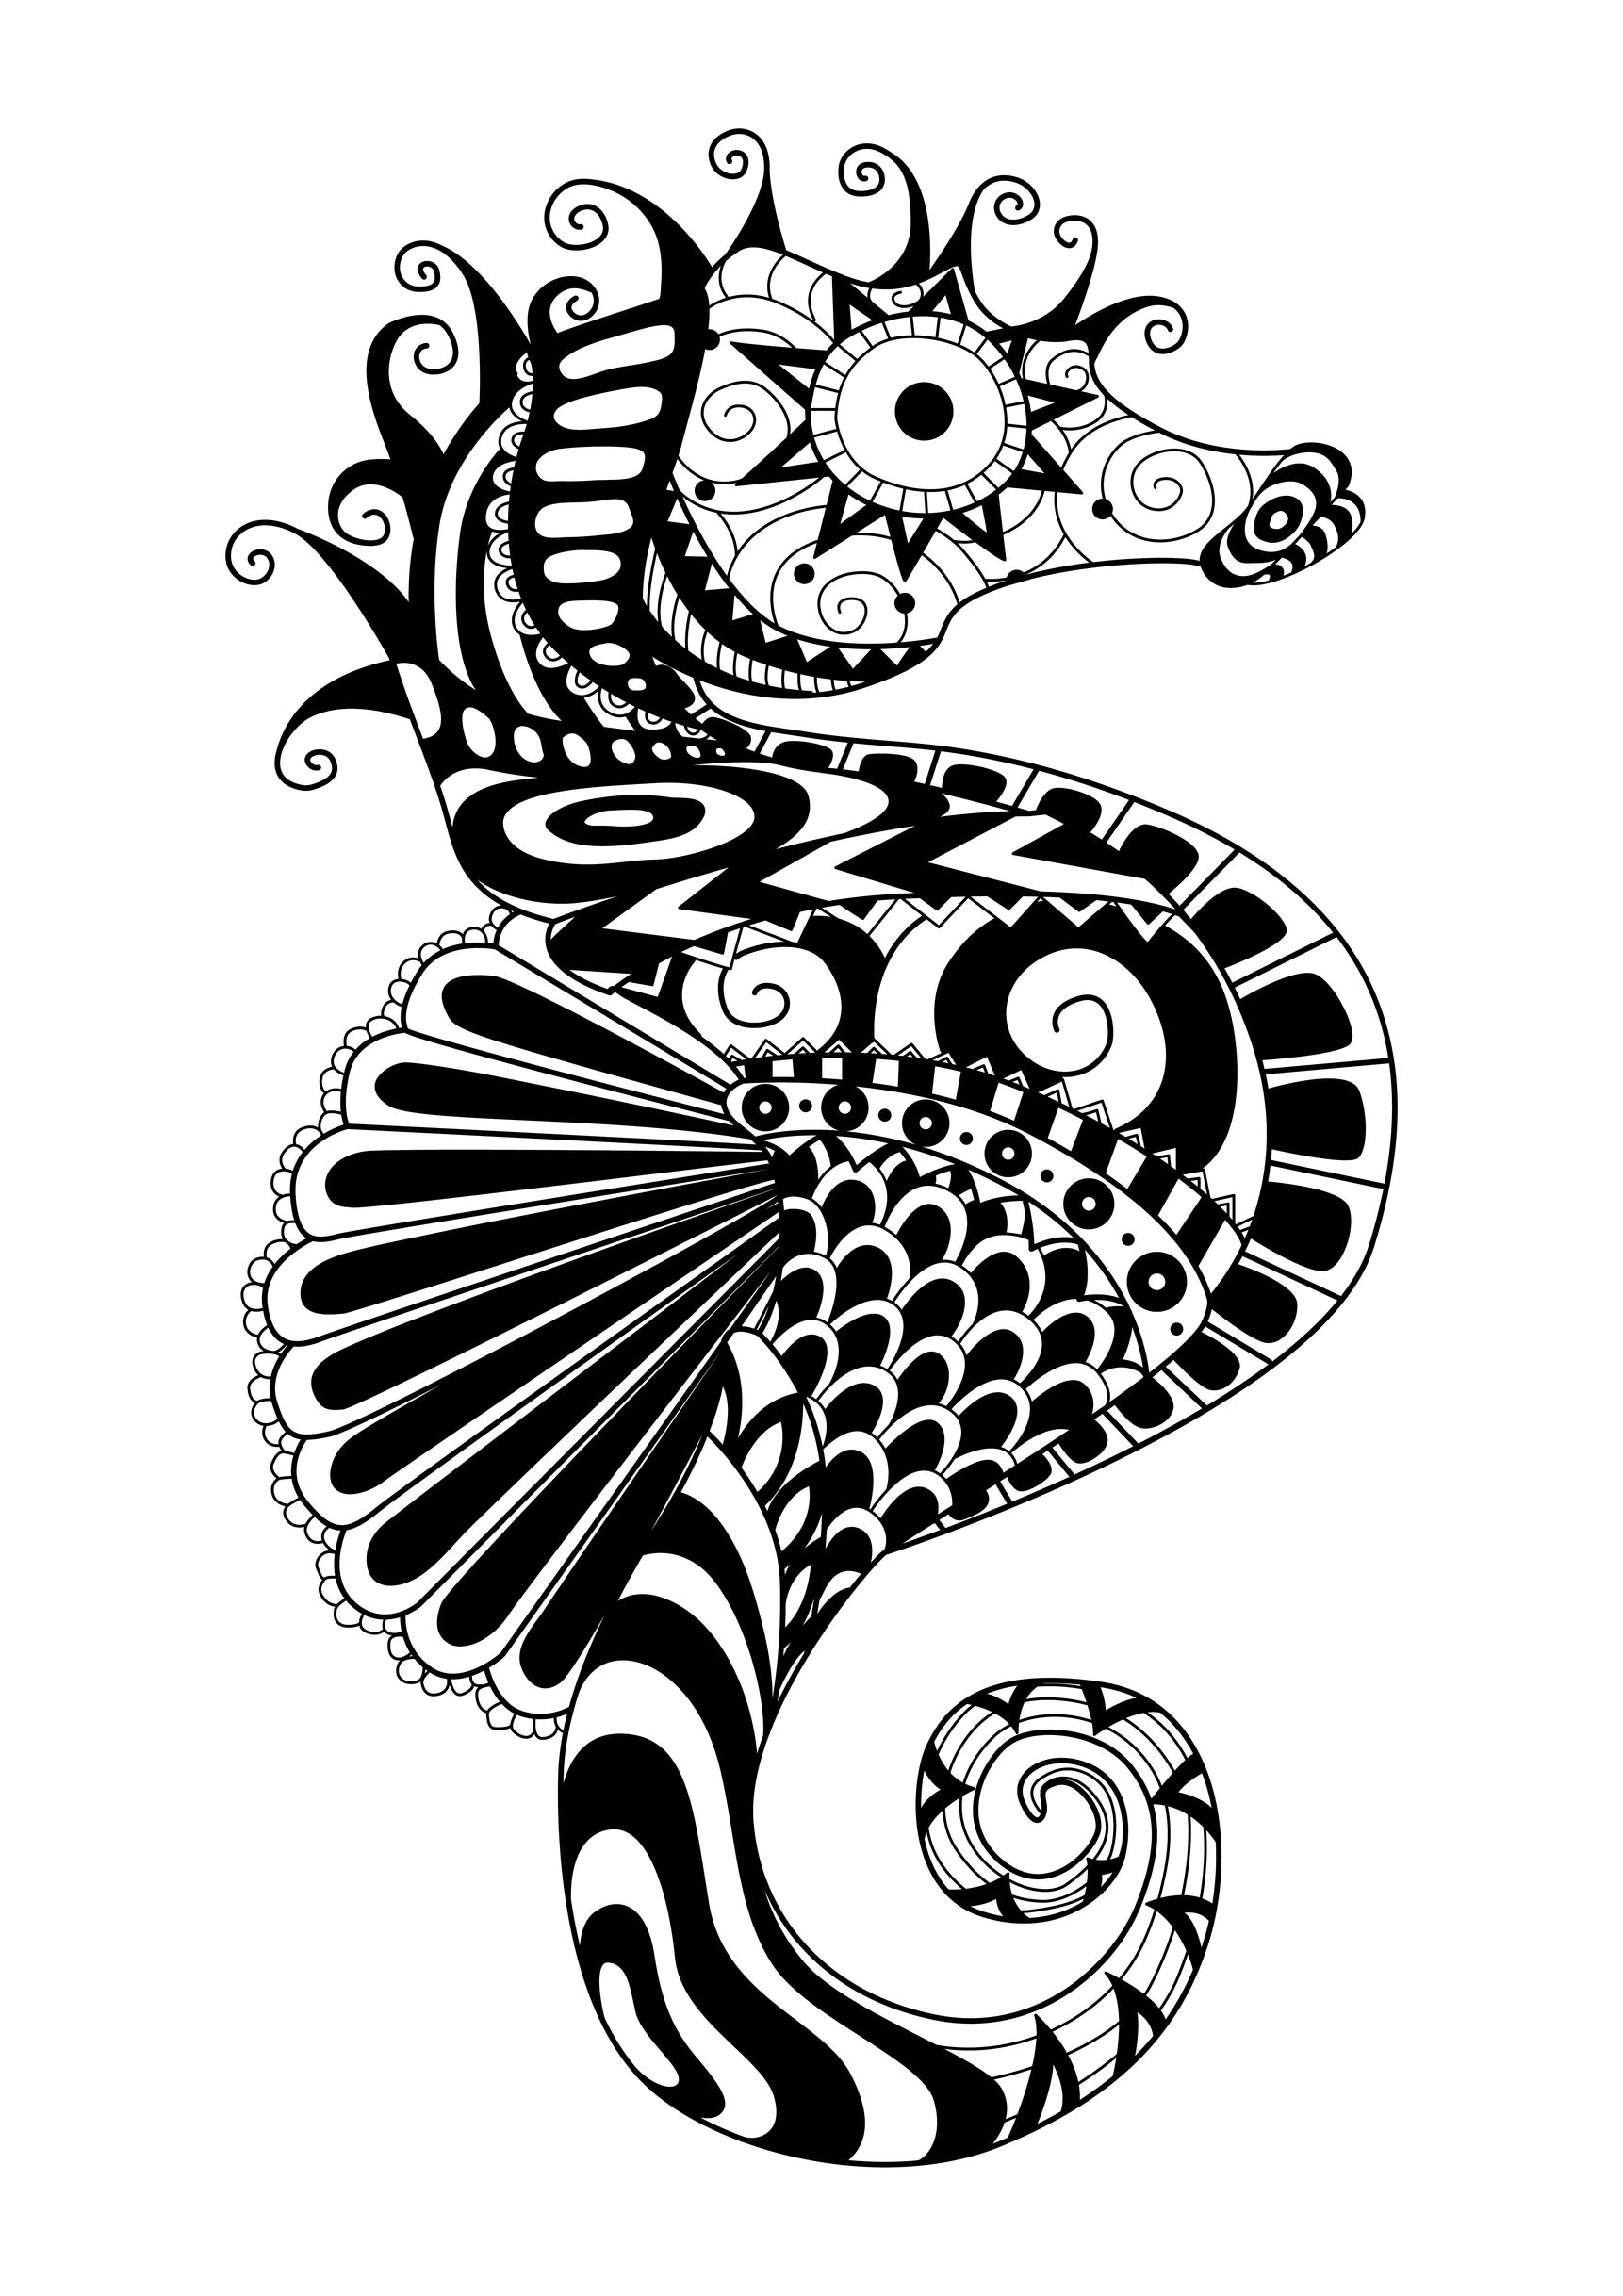 Ein Seepferdchen mit einfachen Zentangle-Mustern gezeichnet. Die Linien sind fließend, es fehlen nur helle Farben, um diese Färbung schön zu machen, entspannende Wirkung garantiert, Künstler : Bimdeedee   Quelle : 123rf